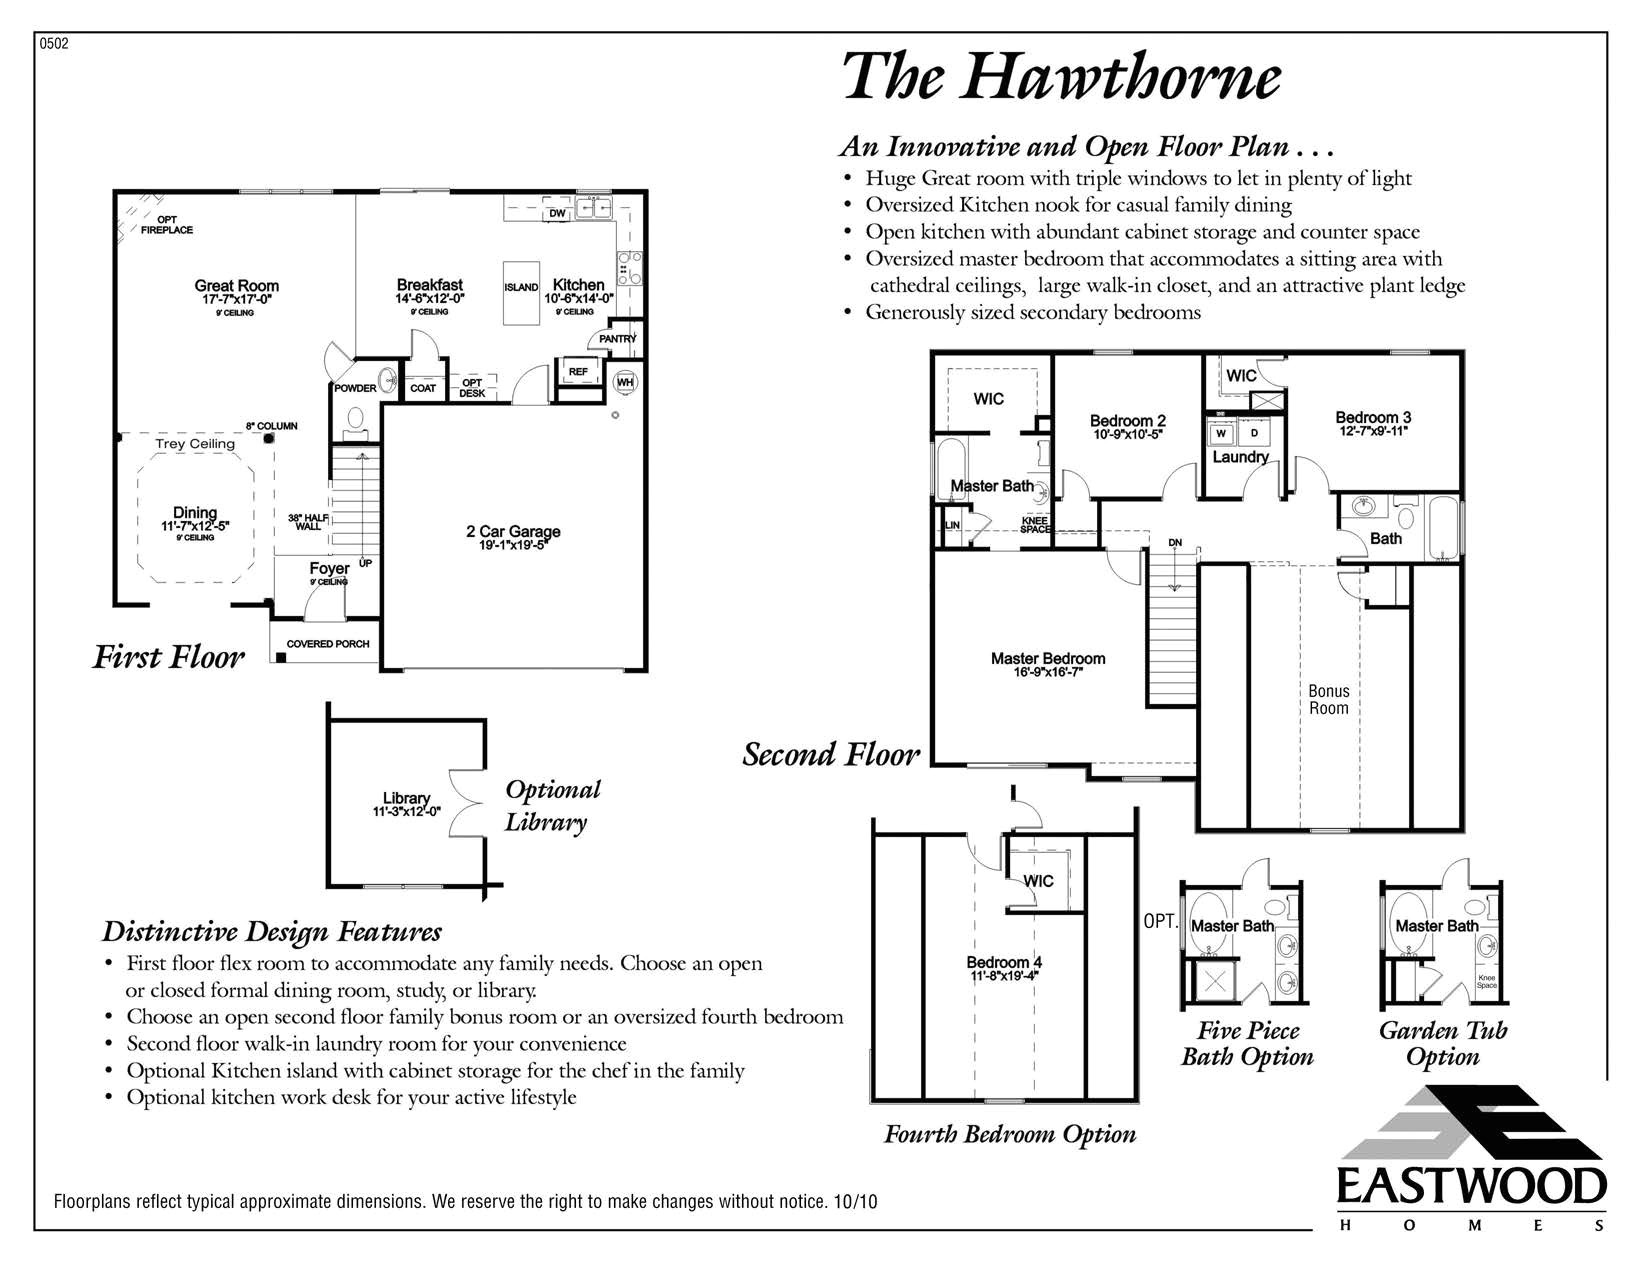 eastwood homes ellerbe floor plan